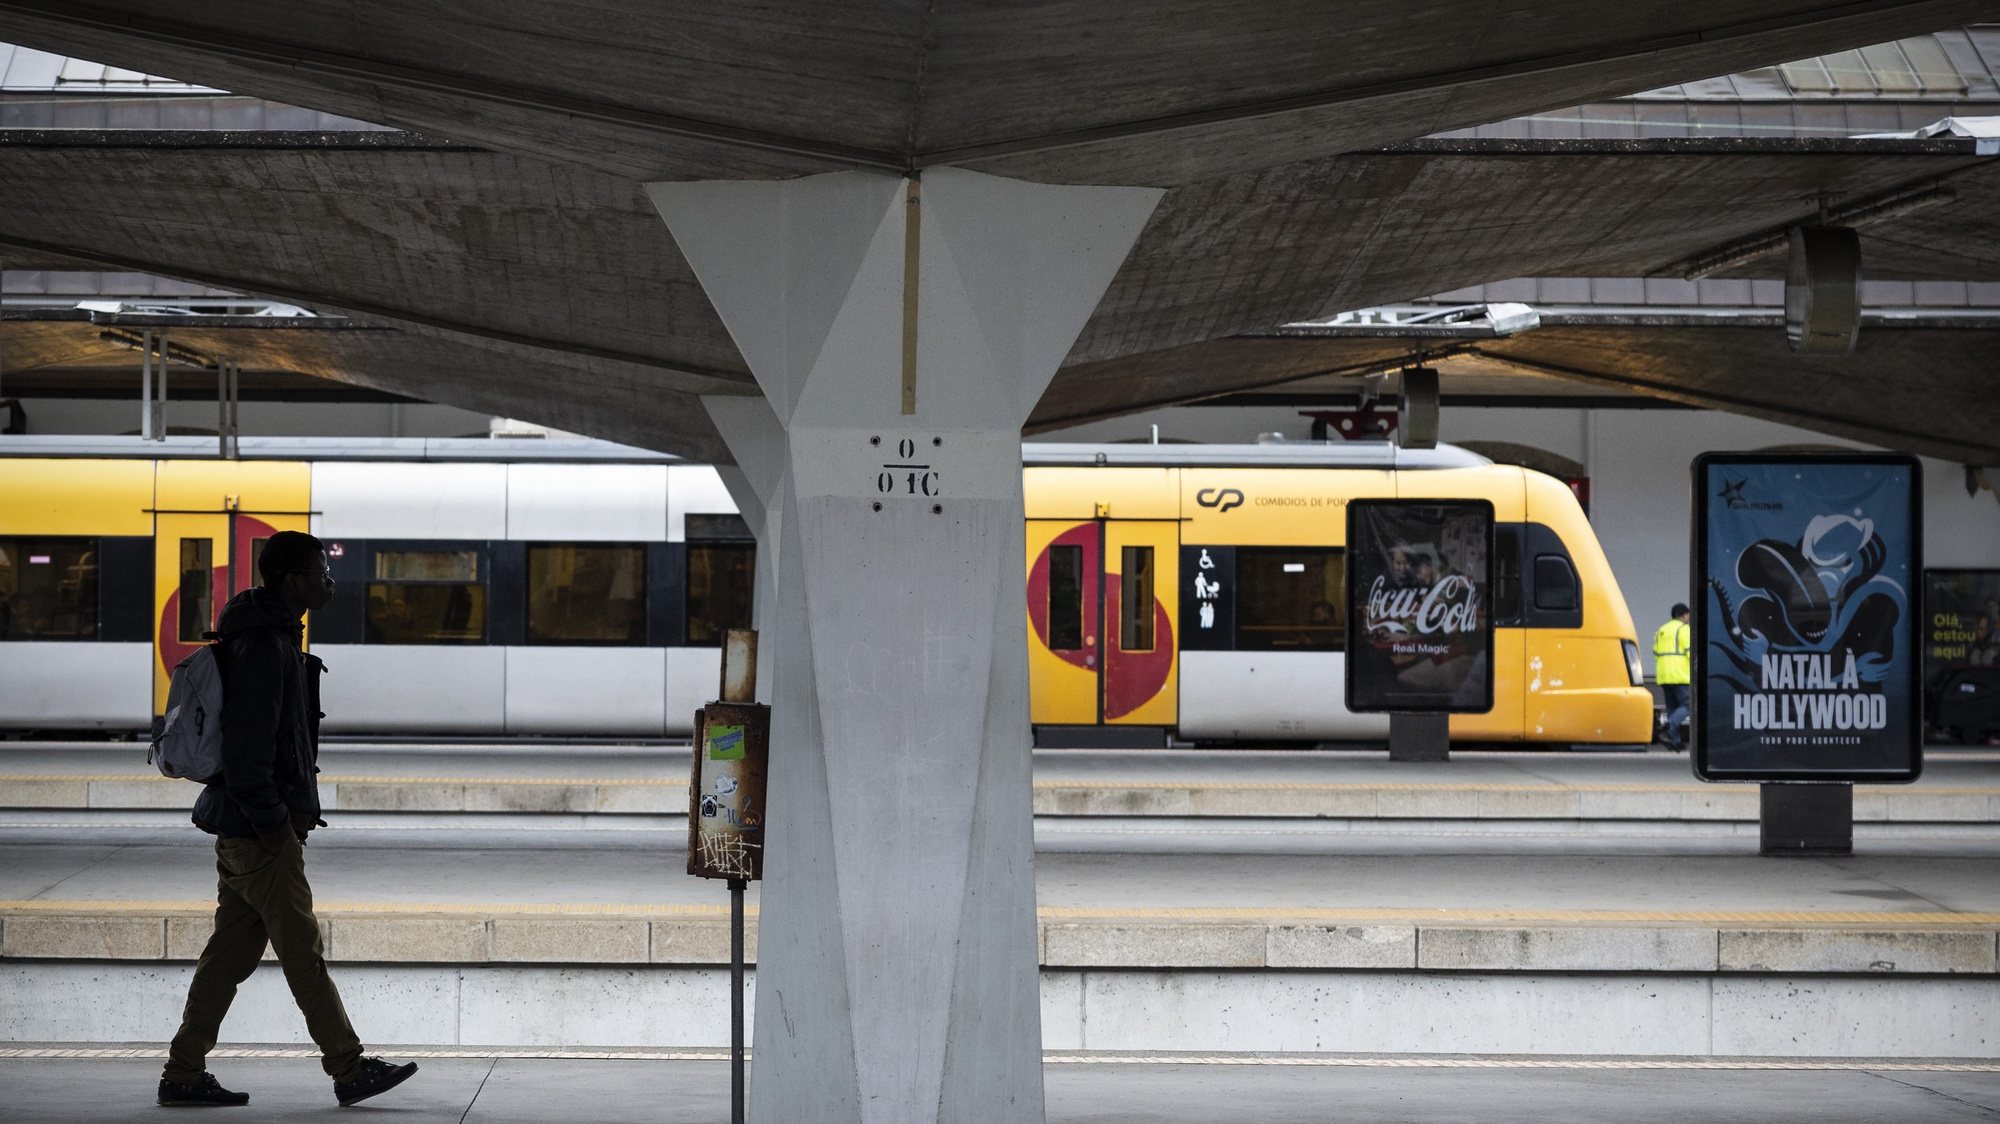 Passageiros aguardam por um comboio na Estação de Campanhã, durante o dia da greve de 24 horas dos trabalhadores da CP - Comboios de Portugal, em conjunto com os trabalhadores da Infraestruturas de Portugal (IP), no Porto, 23 de dezembro de 2022. JOSÉ COELHO/LUSA